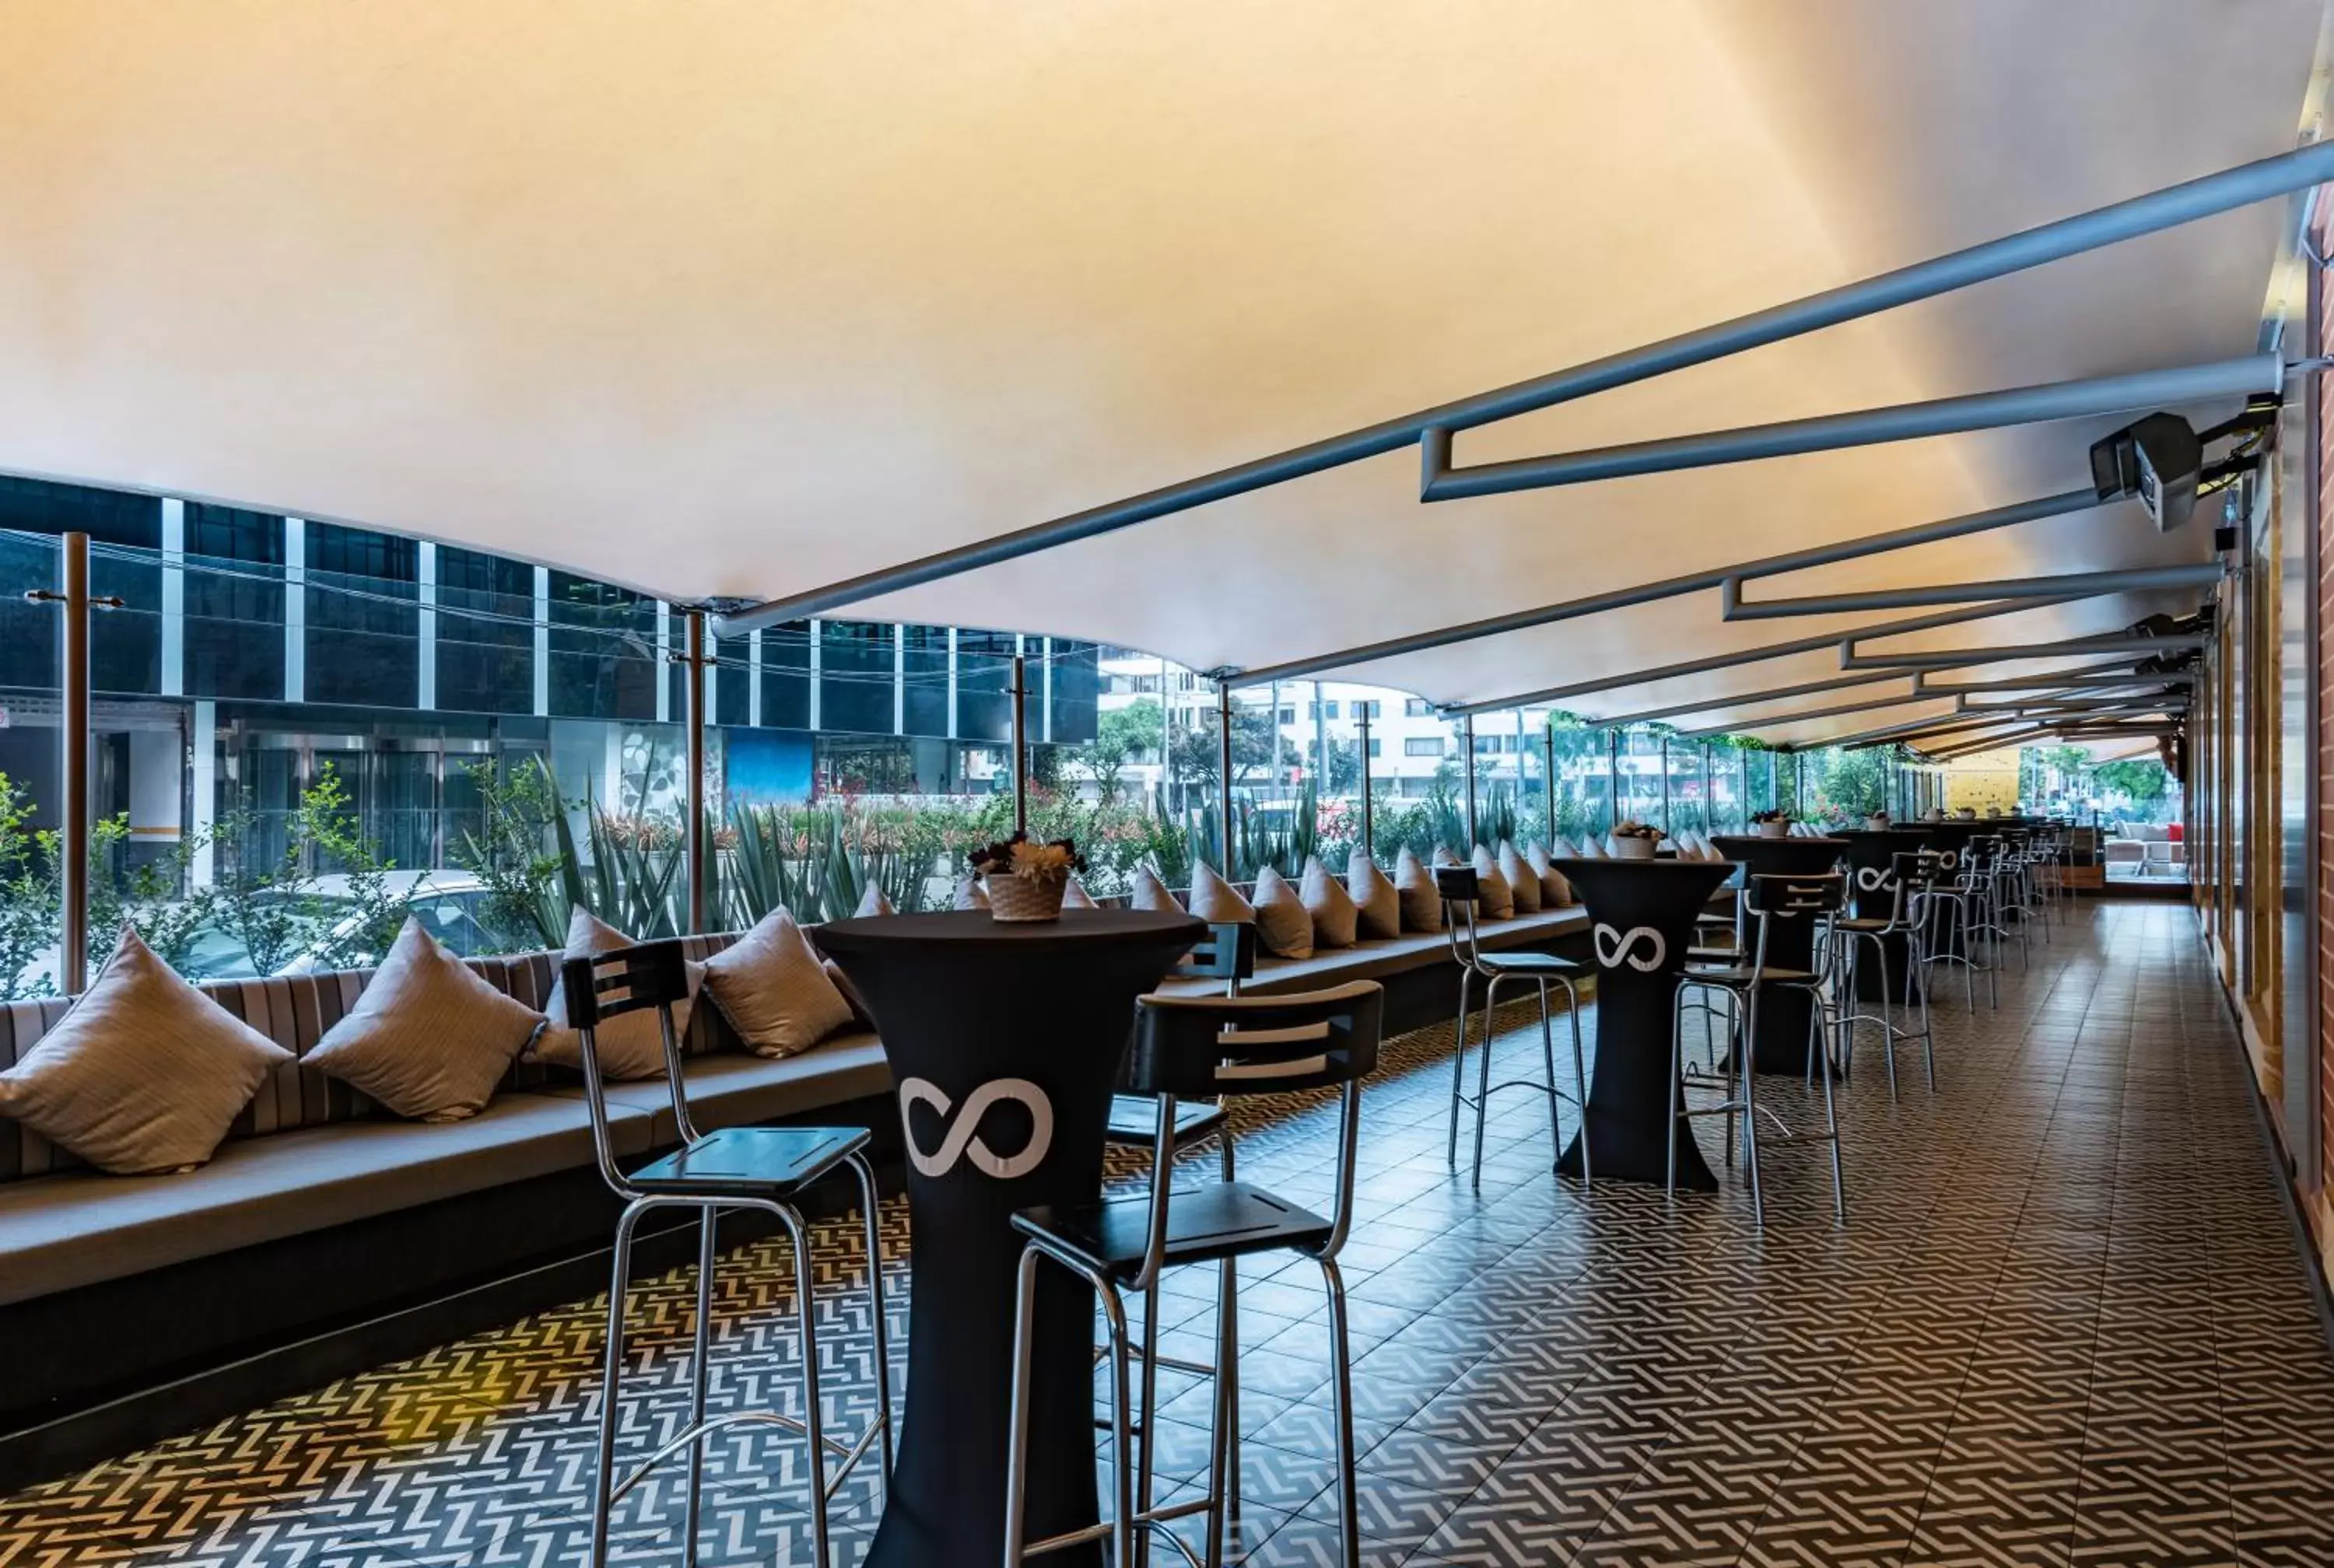 Dining area, Lounge/Bar in Cosmos 100 Hotel & Centro de Convenciones - Hoteles Cosmos